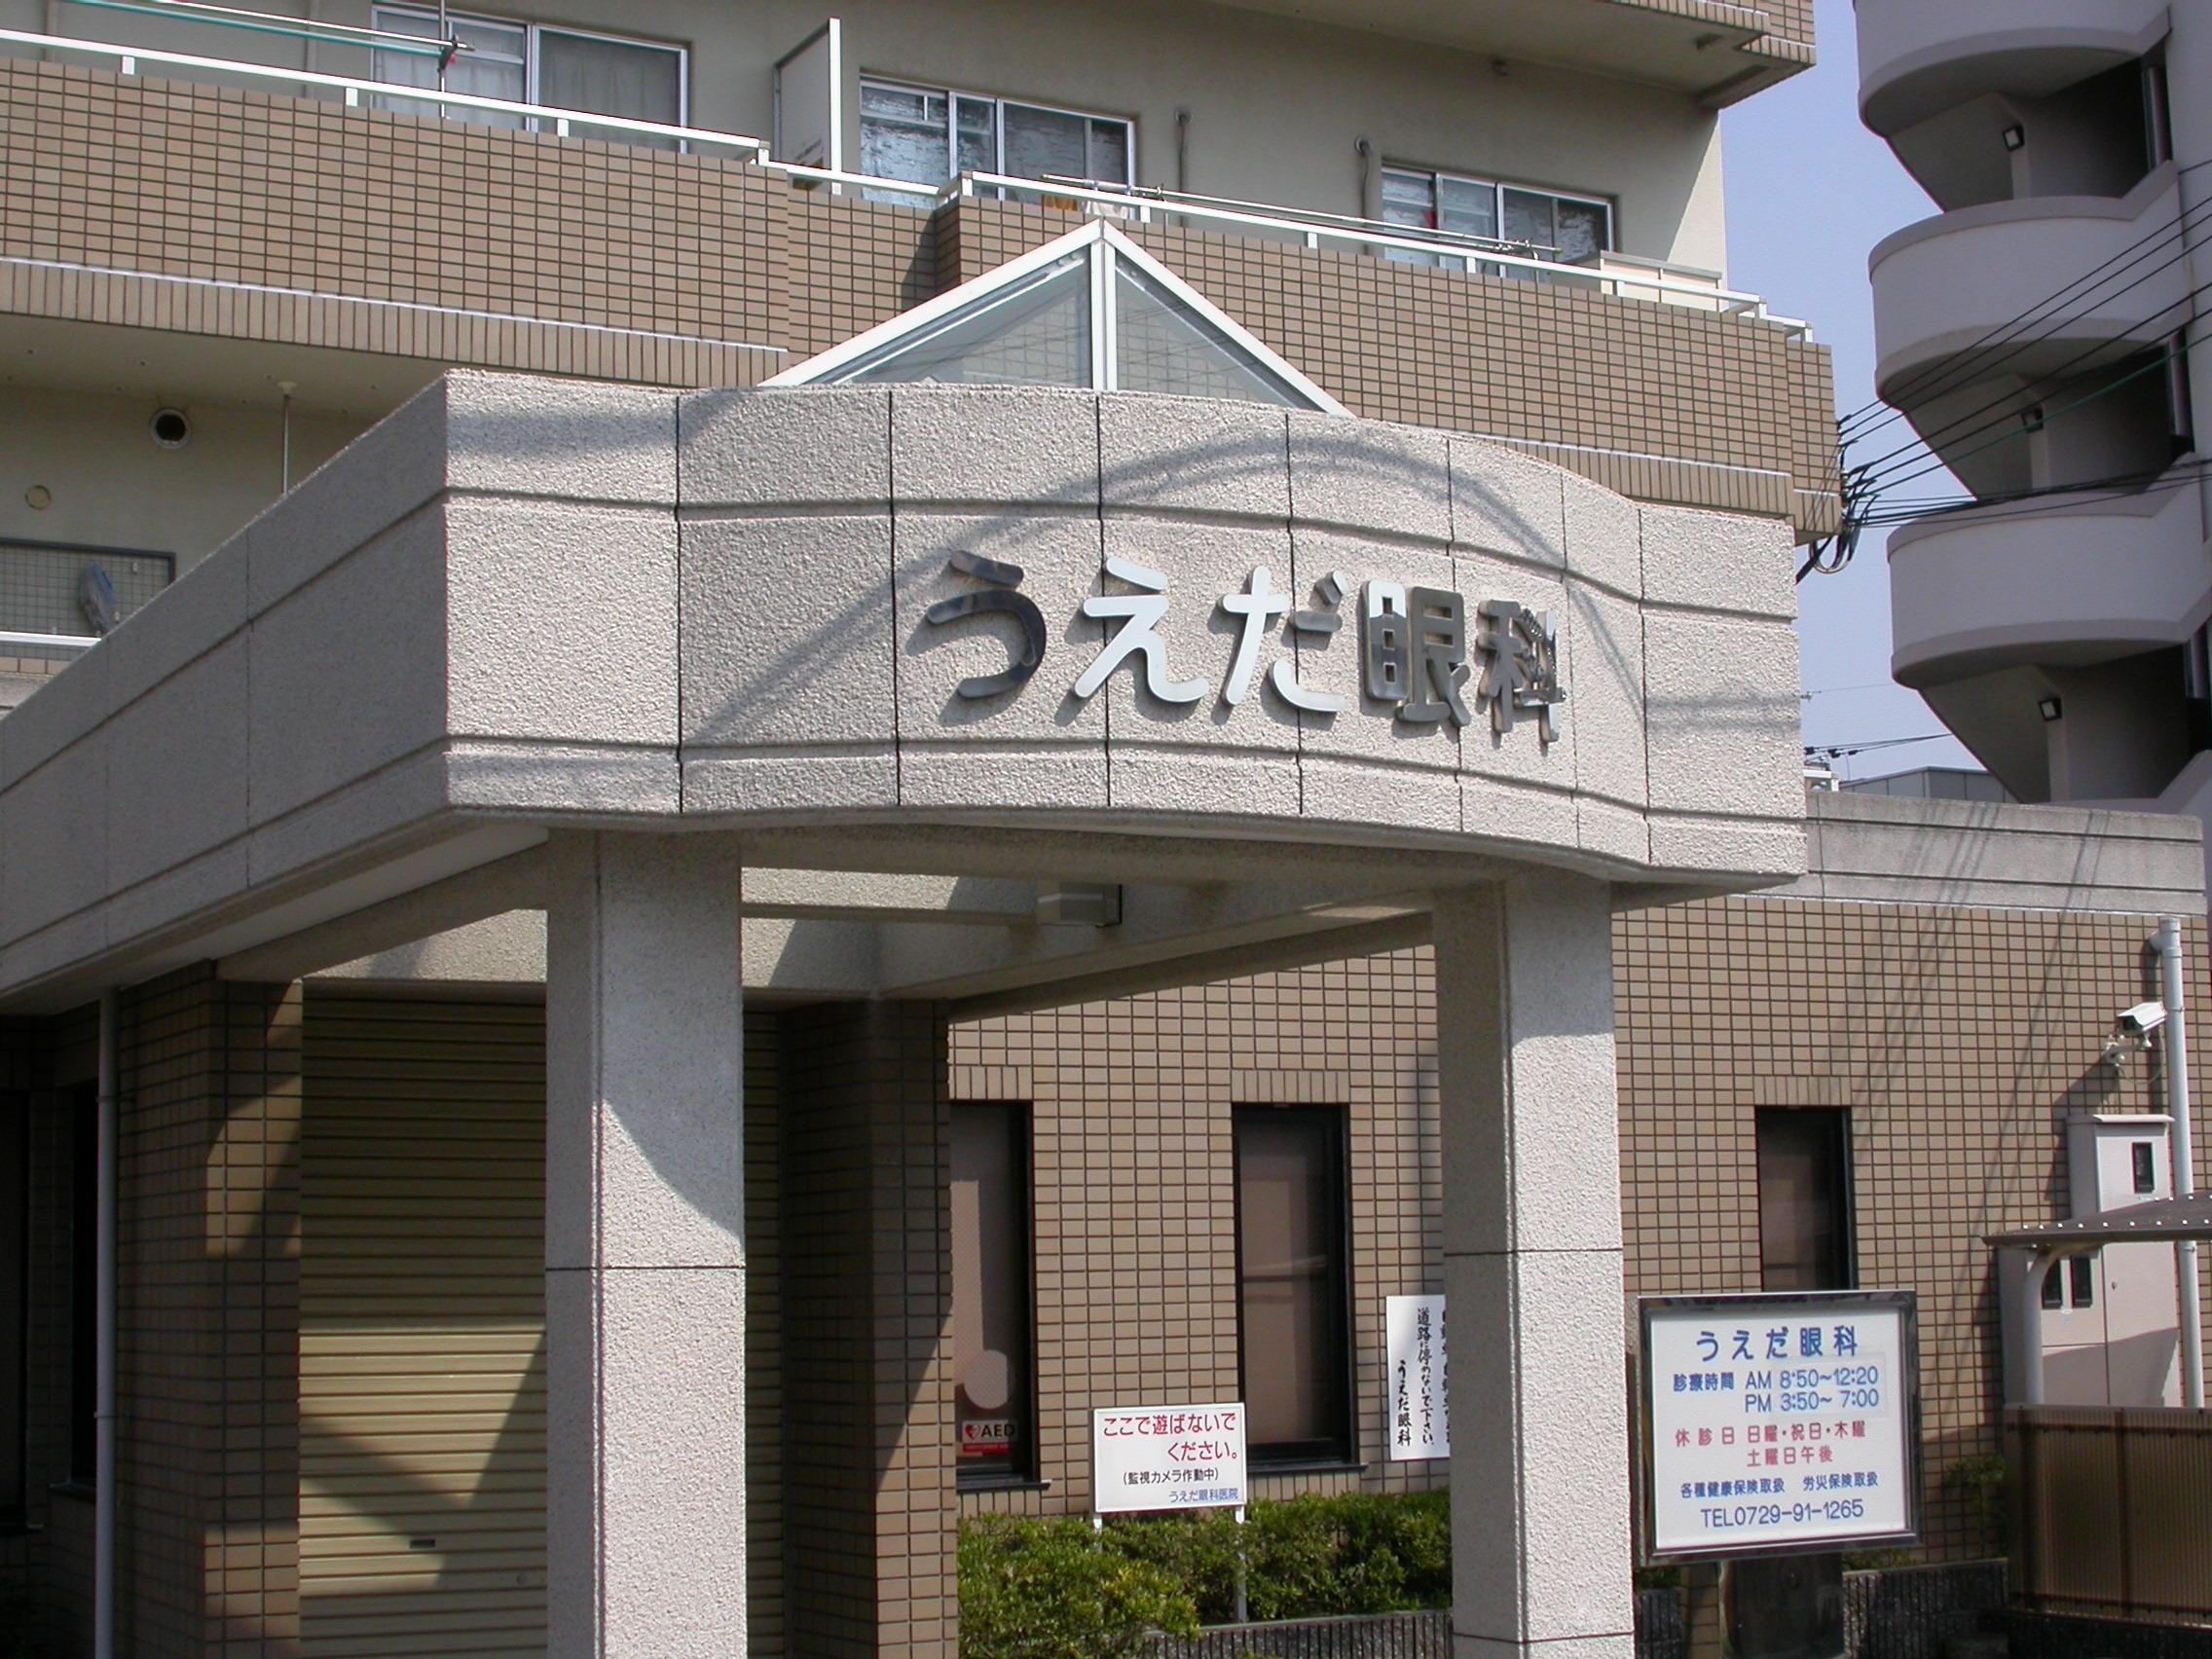 上江田眼科医院 八尾駅 1の写真